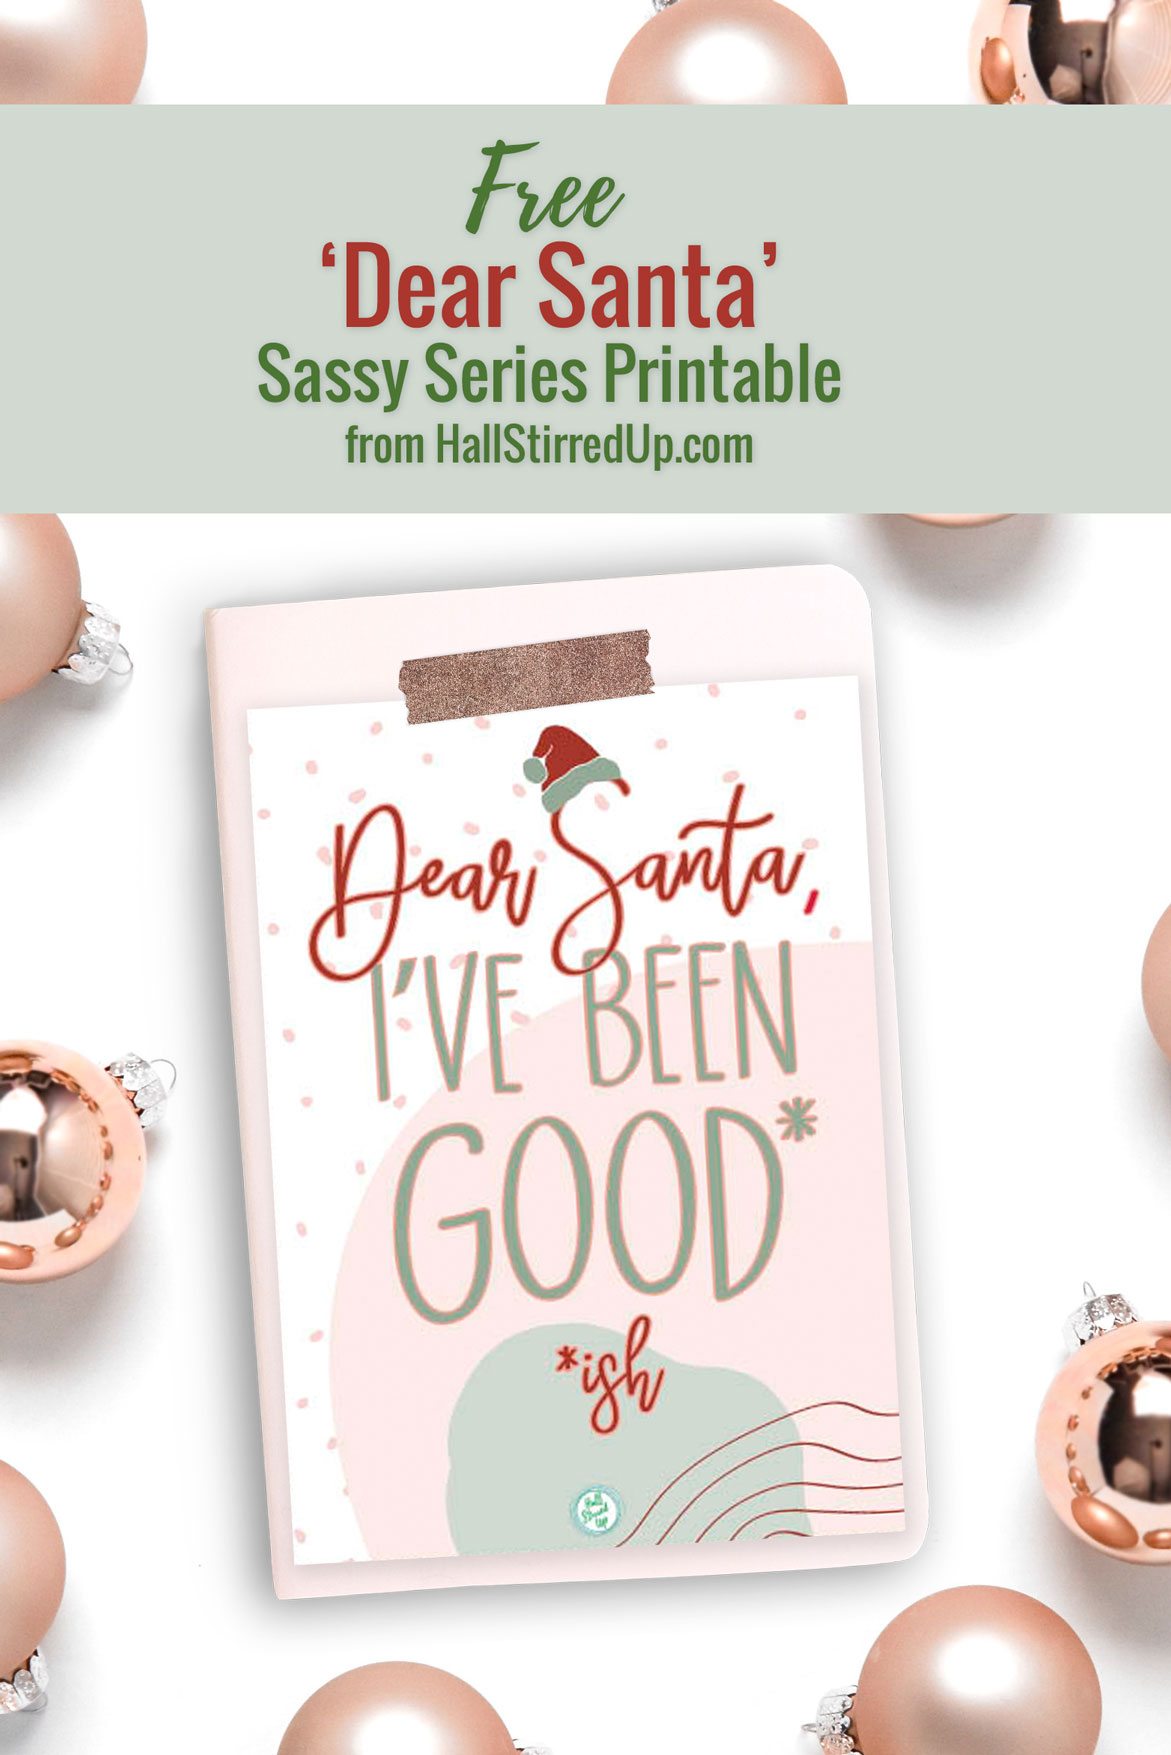 Santa, I've been good-ish Fun new Sassy Series printable